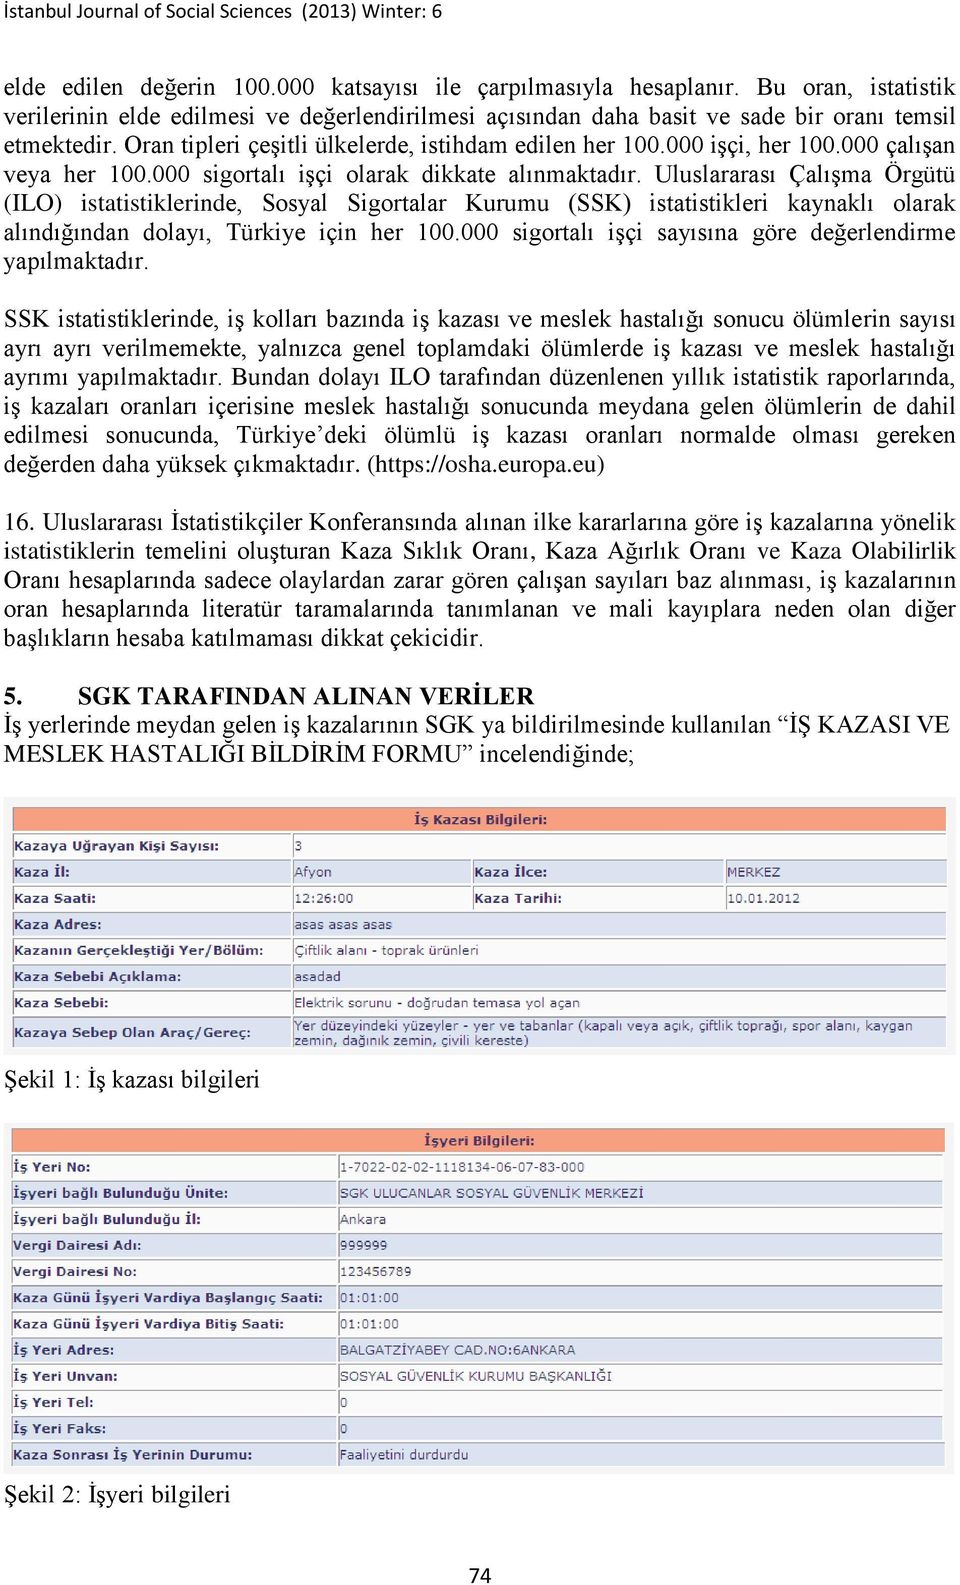 Uluslararası Çalışma Örgütü (ILO) istatistiklerinde, Sosyal Sigortalar Kurumu (SSK) istatistikleri kaynaklı olarak alındığından dolayı, Türkiye için her 100.